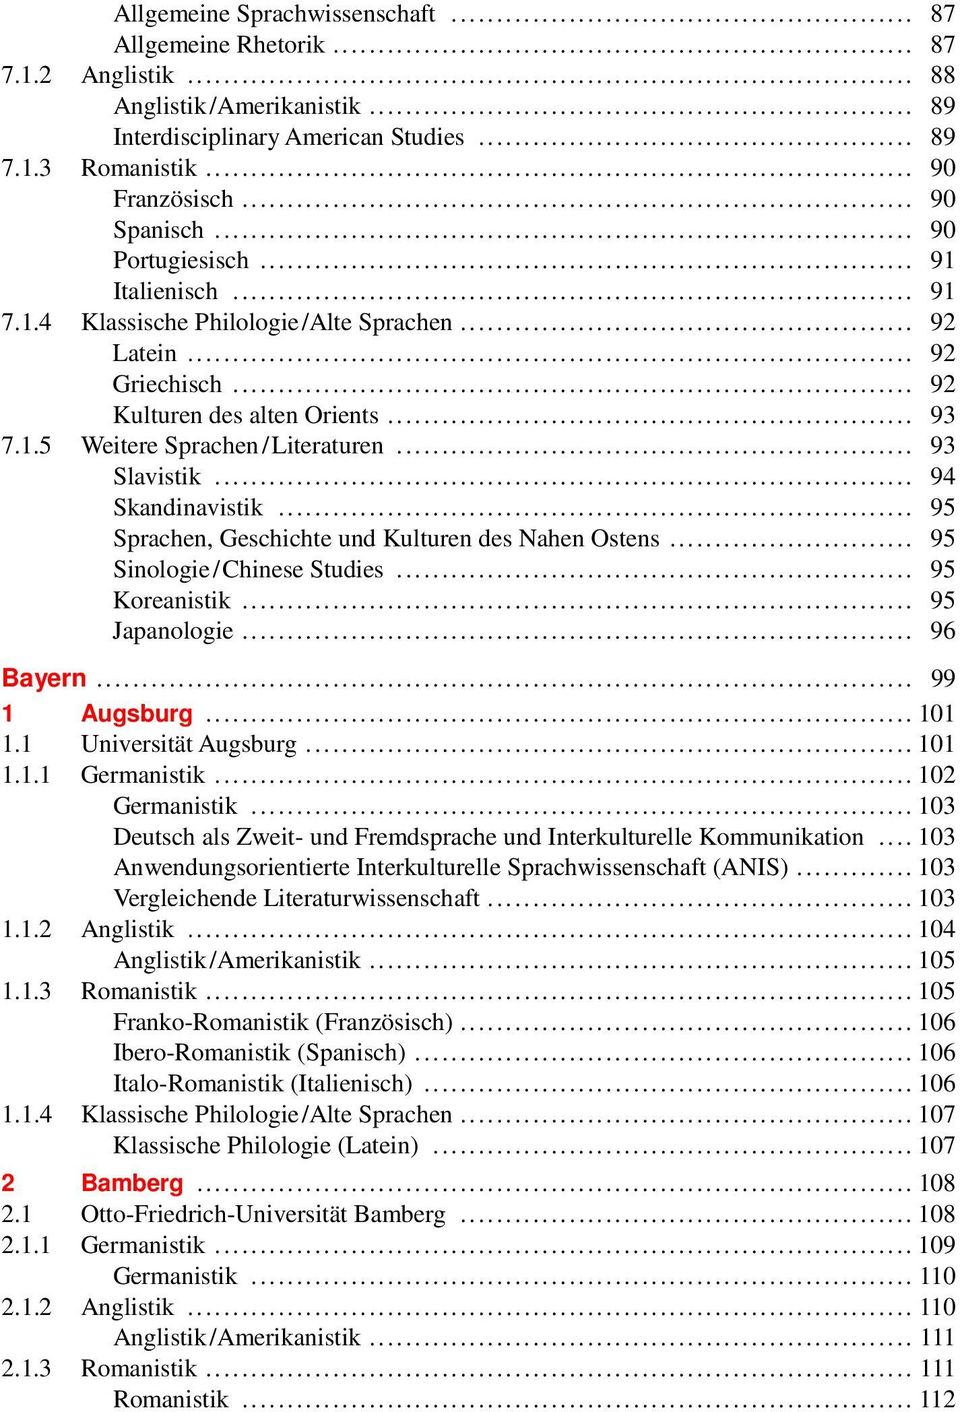 .. 93 Slavistik... 94 Skandinavistik... 95 Sprachen, Geschichte und Kulturen des Nahen Ostens... 95 Sinologie / Chinese Studies... 95 Koreanistik... 95 Japanologie... 96 Bayern... 99 1 Augsburg.